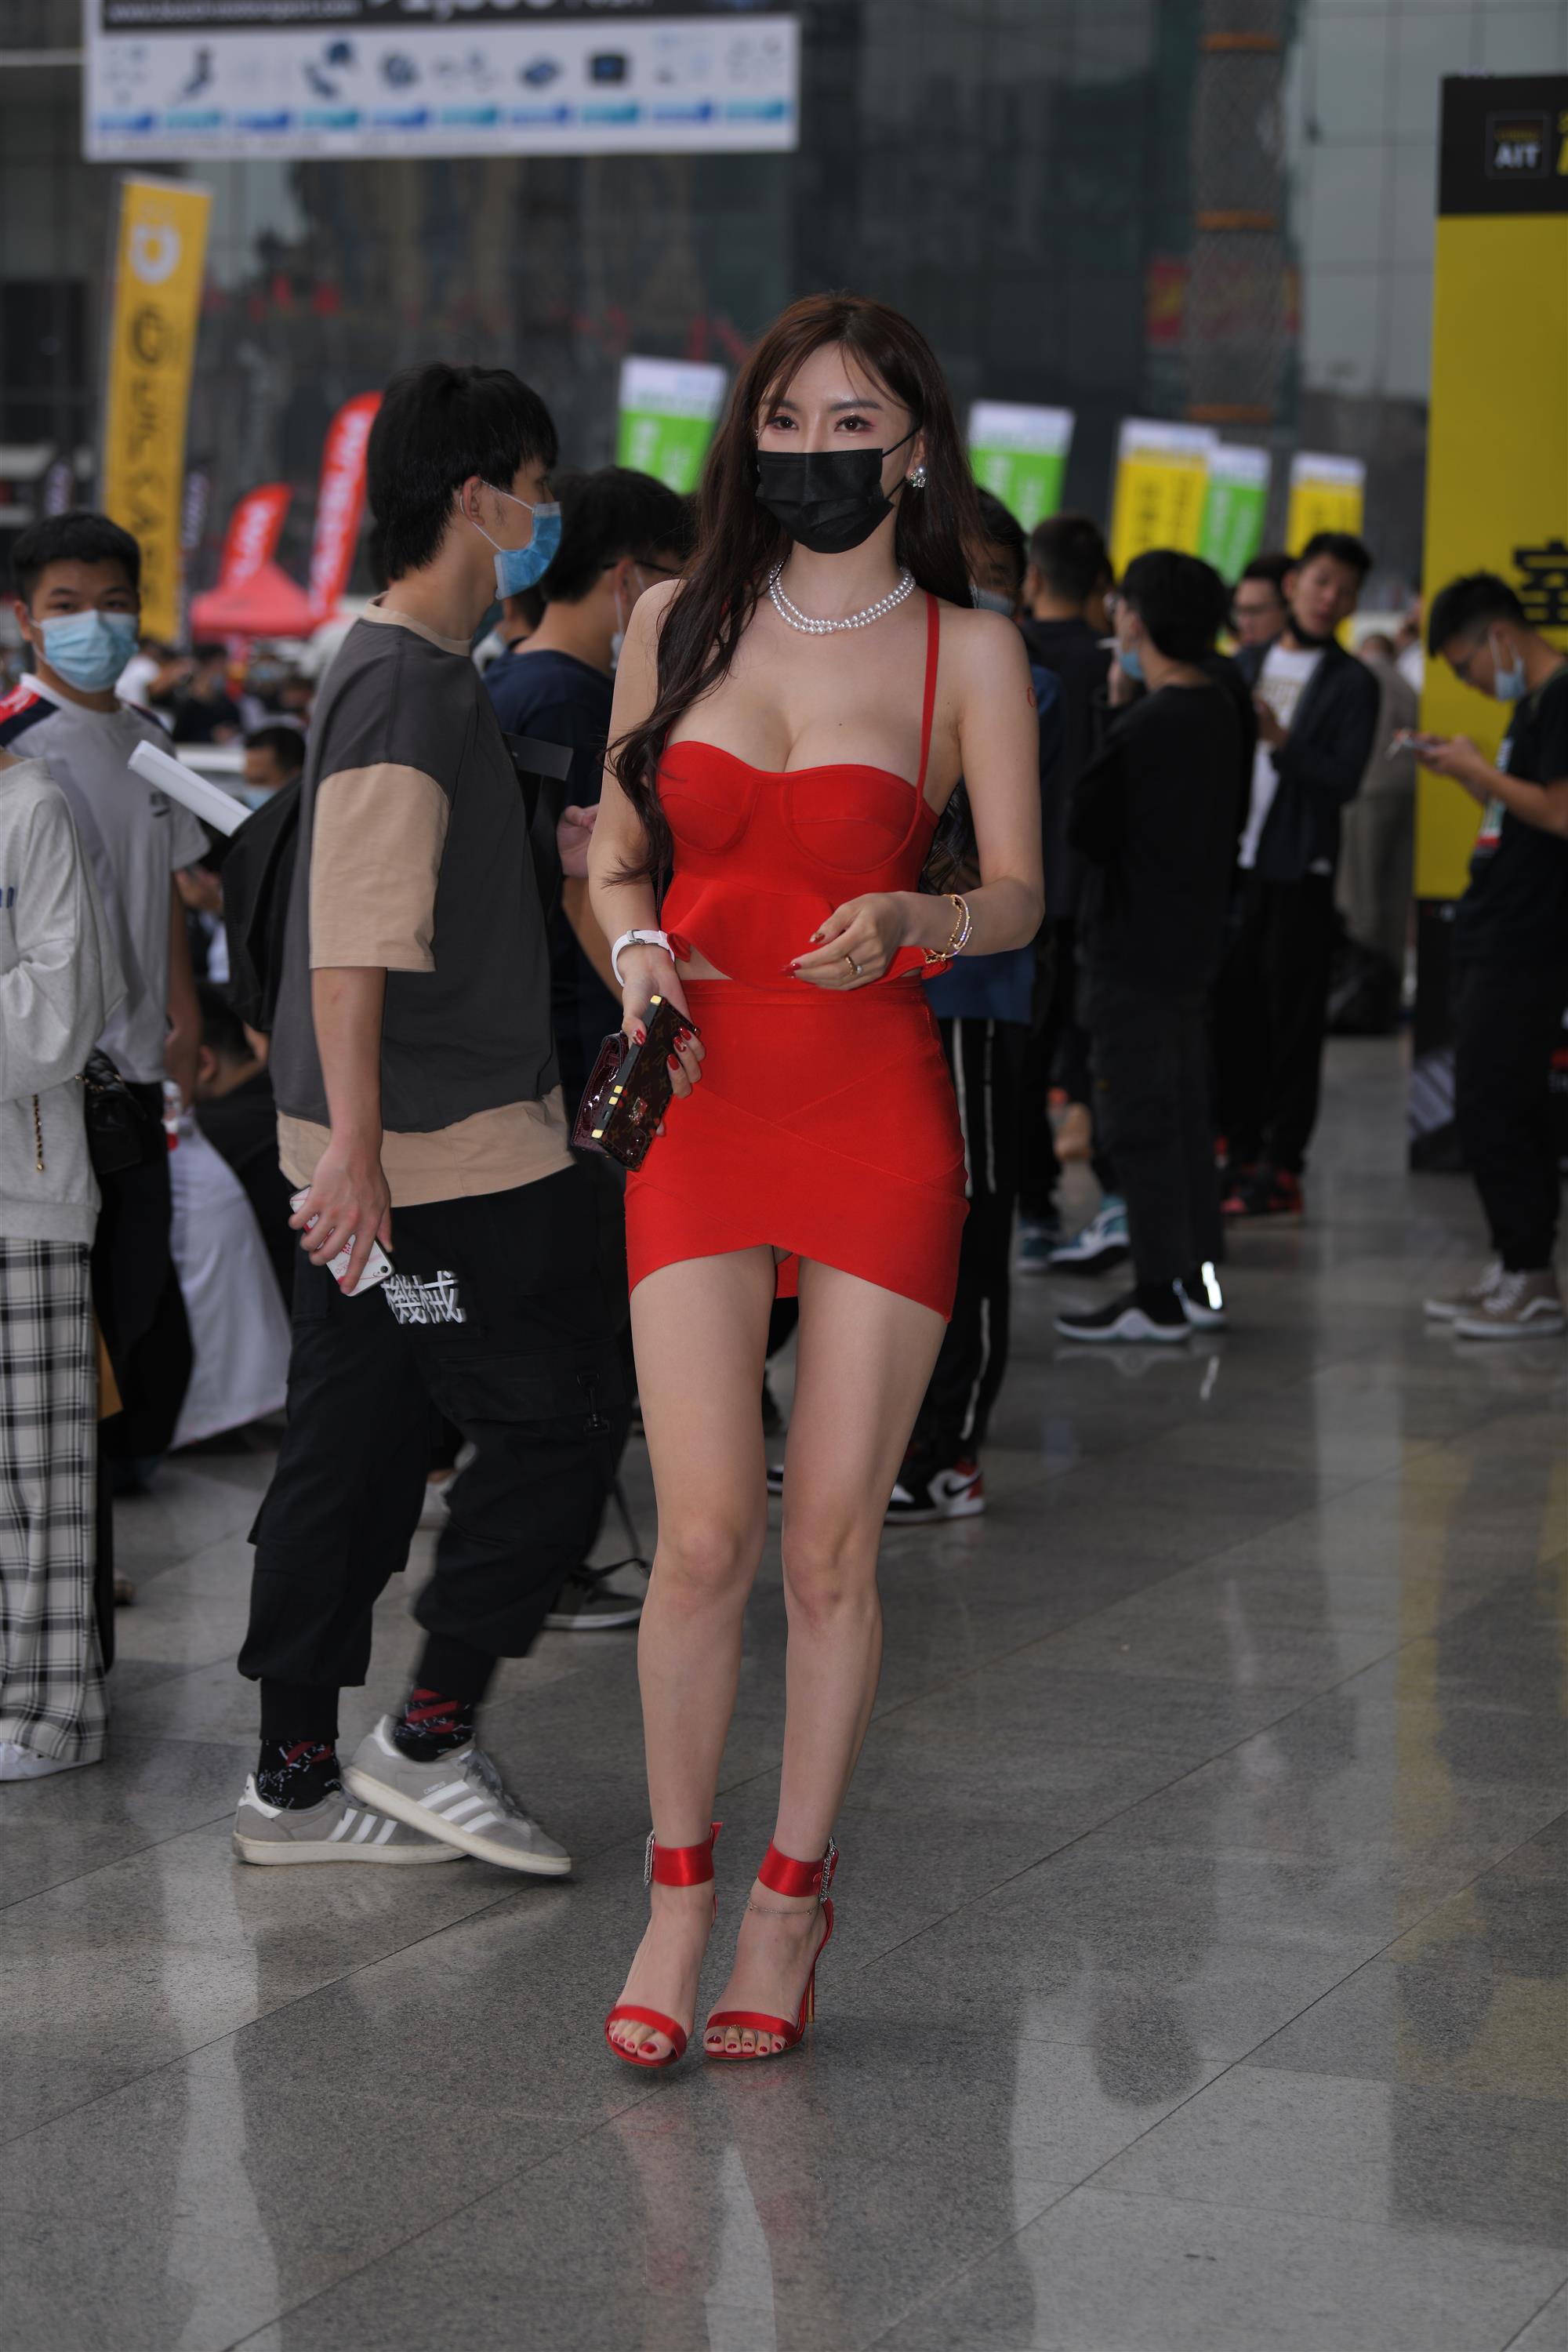 Street Red miniskirt - 24.jpg